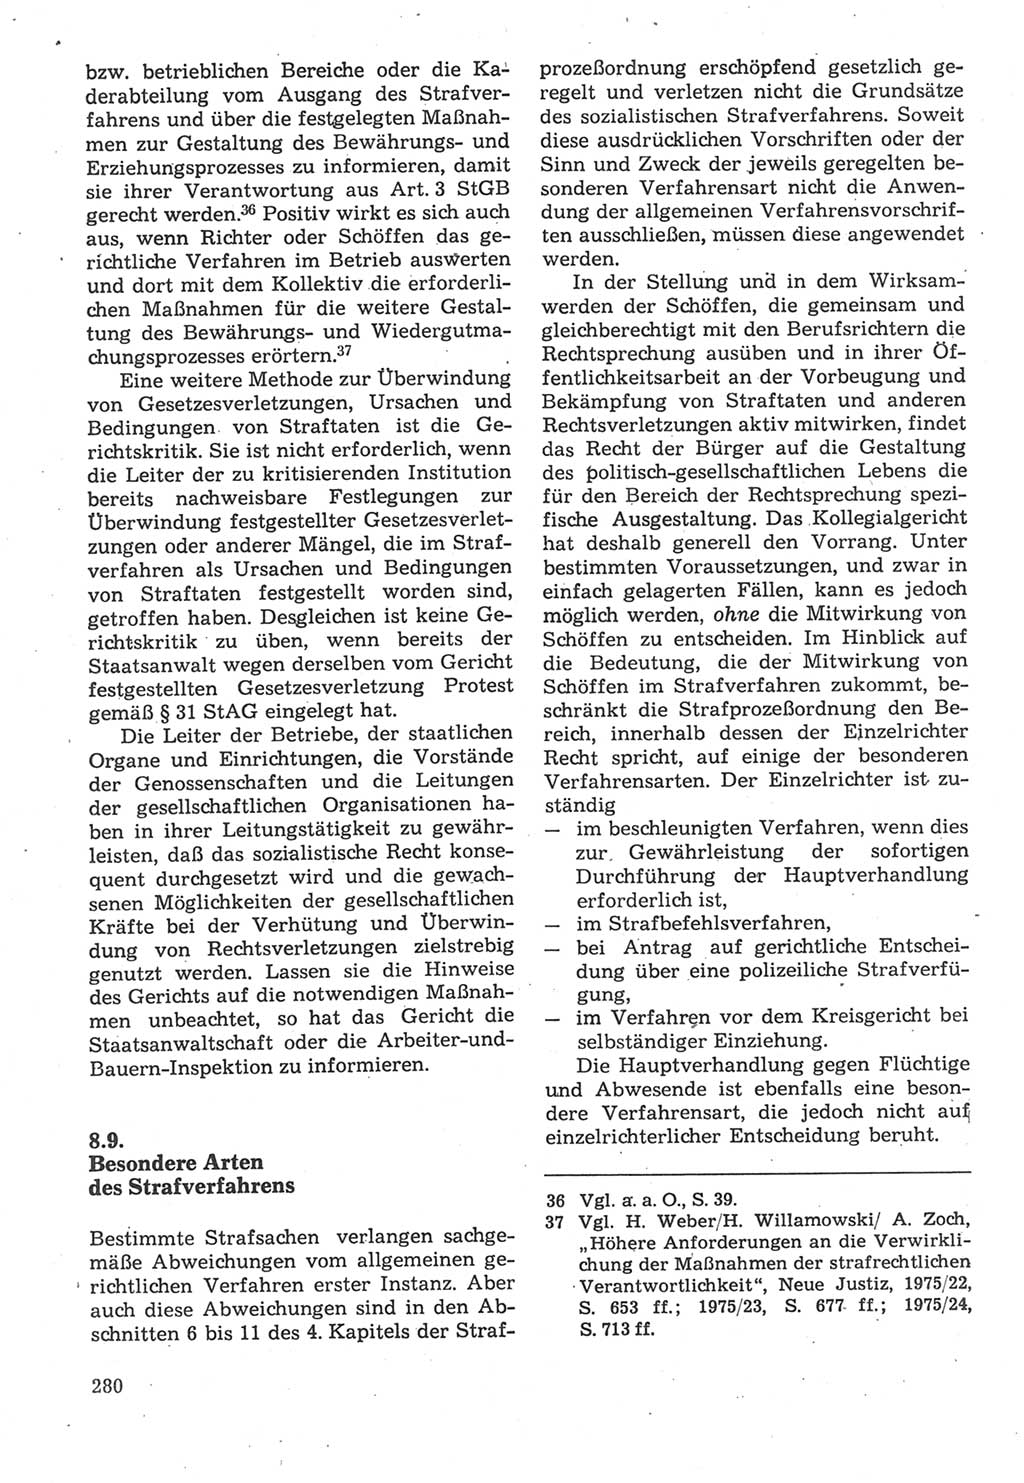 Strafverfahrensrecht [Deutsche Demokratische Republik (DDR)], Lehrbuch 1987, Seite 280 (Strafverf.-R. DDR Lb. 1987, S. 280)